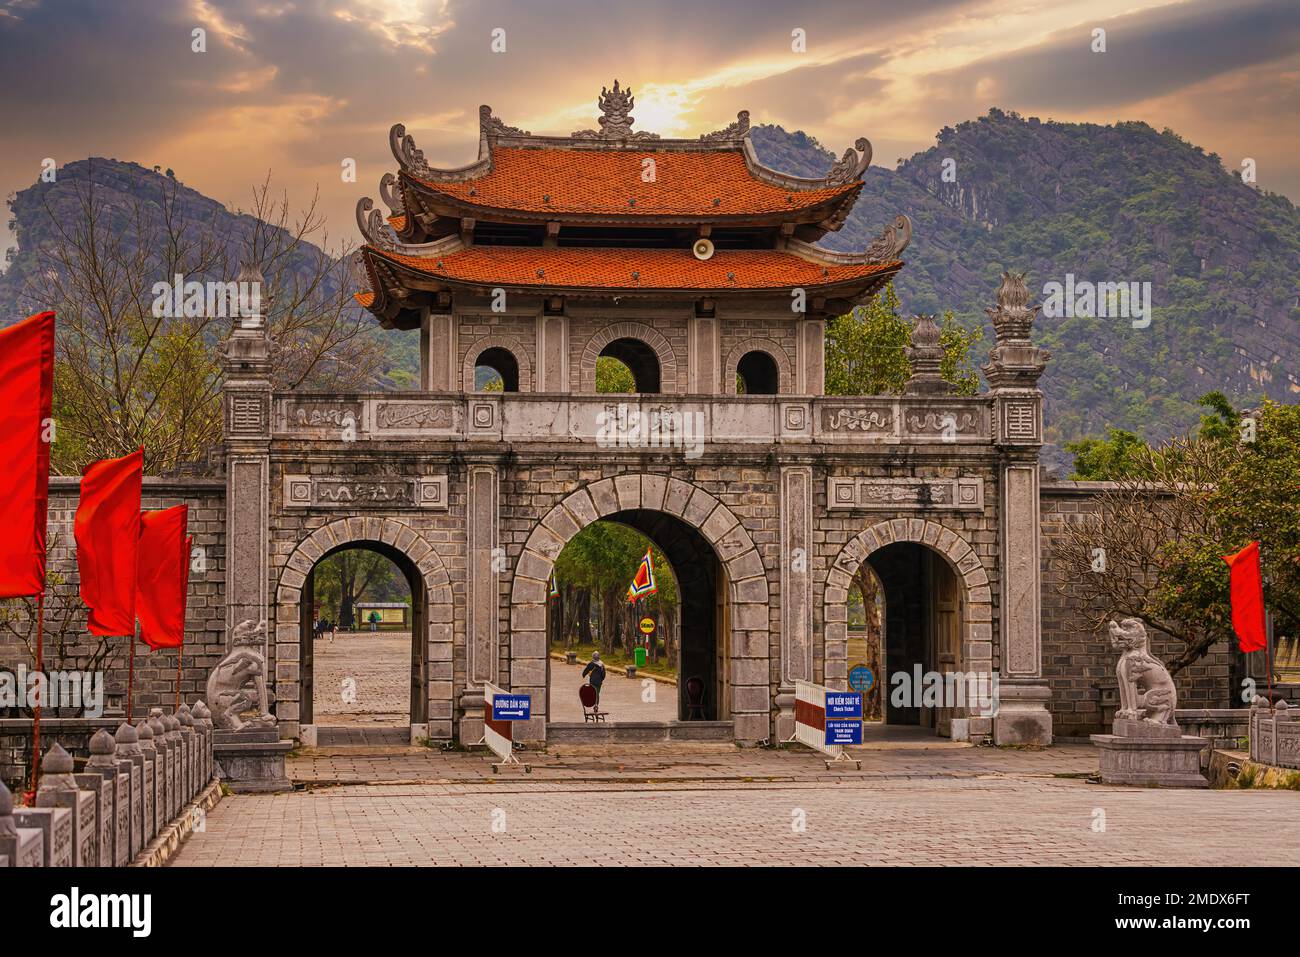 Porte d'entrée de Hoa lu Ninh Binh, la première capitale du Vietnam Banque D'Images